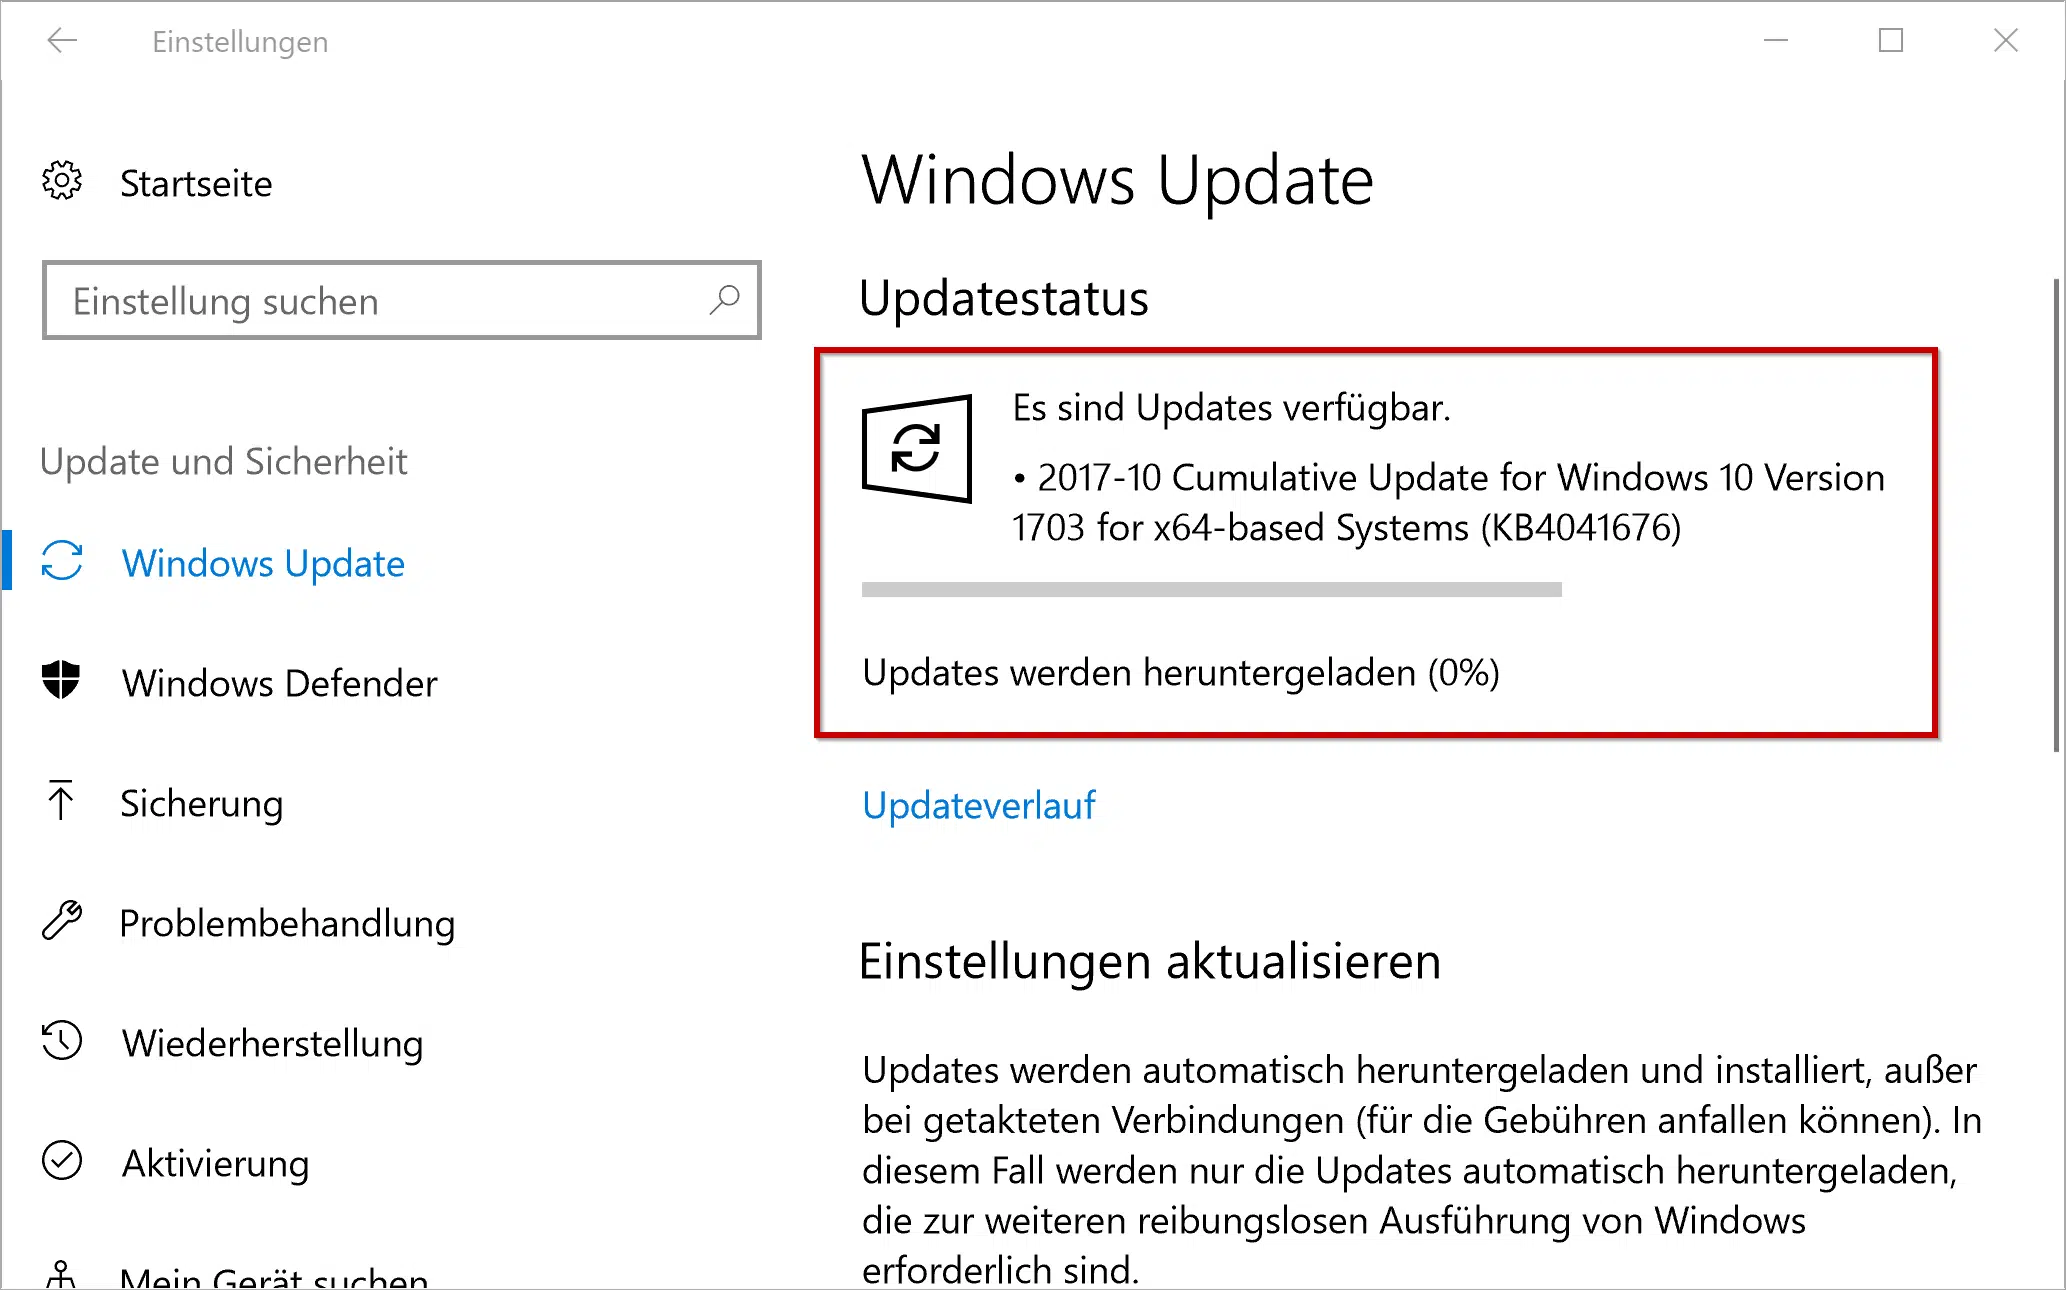 KB4041676 Update für Windows 10 Version 1703 Creators Update erschienen (Build 15063.674)